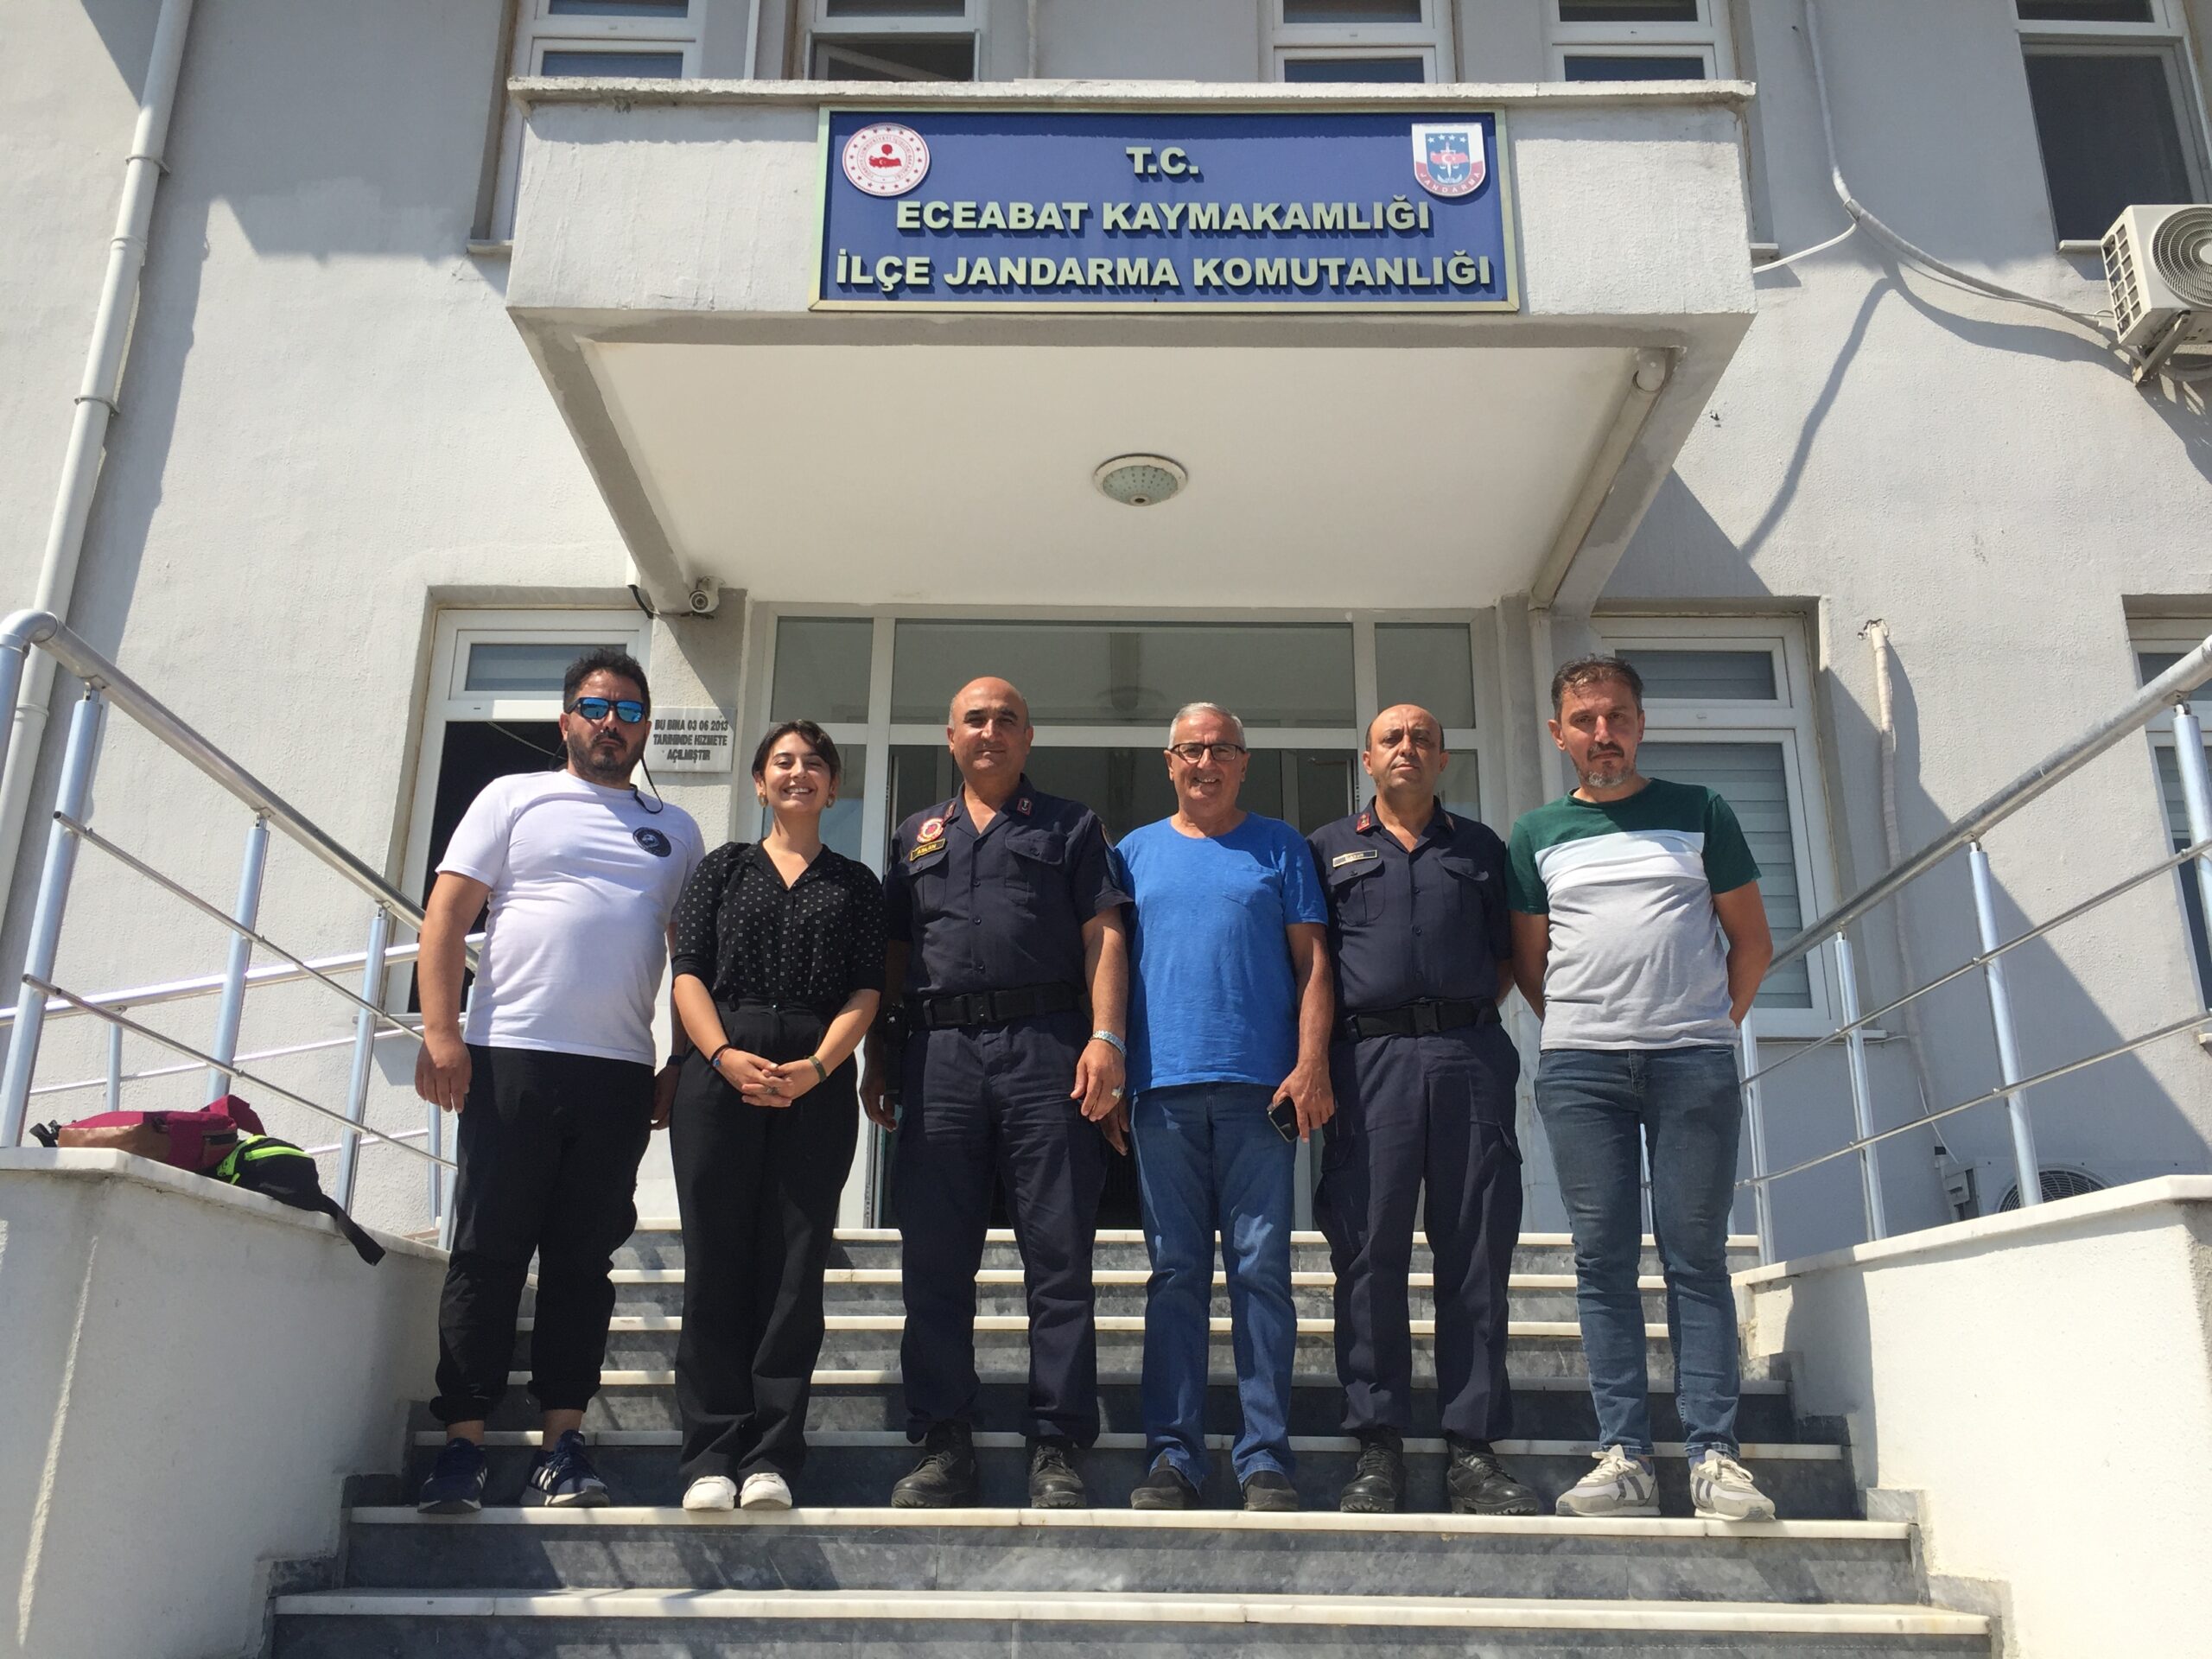 Çanakkale Bisiklet Platformu Gönüllüleri, Eceabat İlçe Jandarma Komutanlığını Ziyaret Etti.